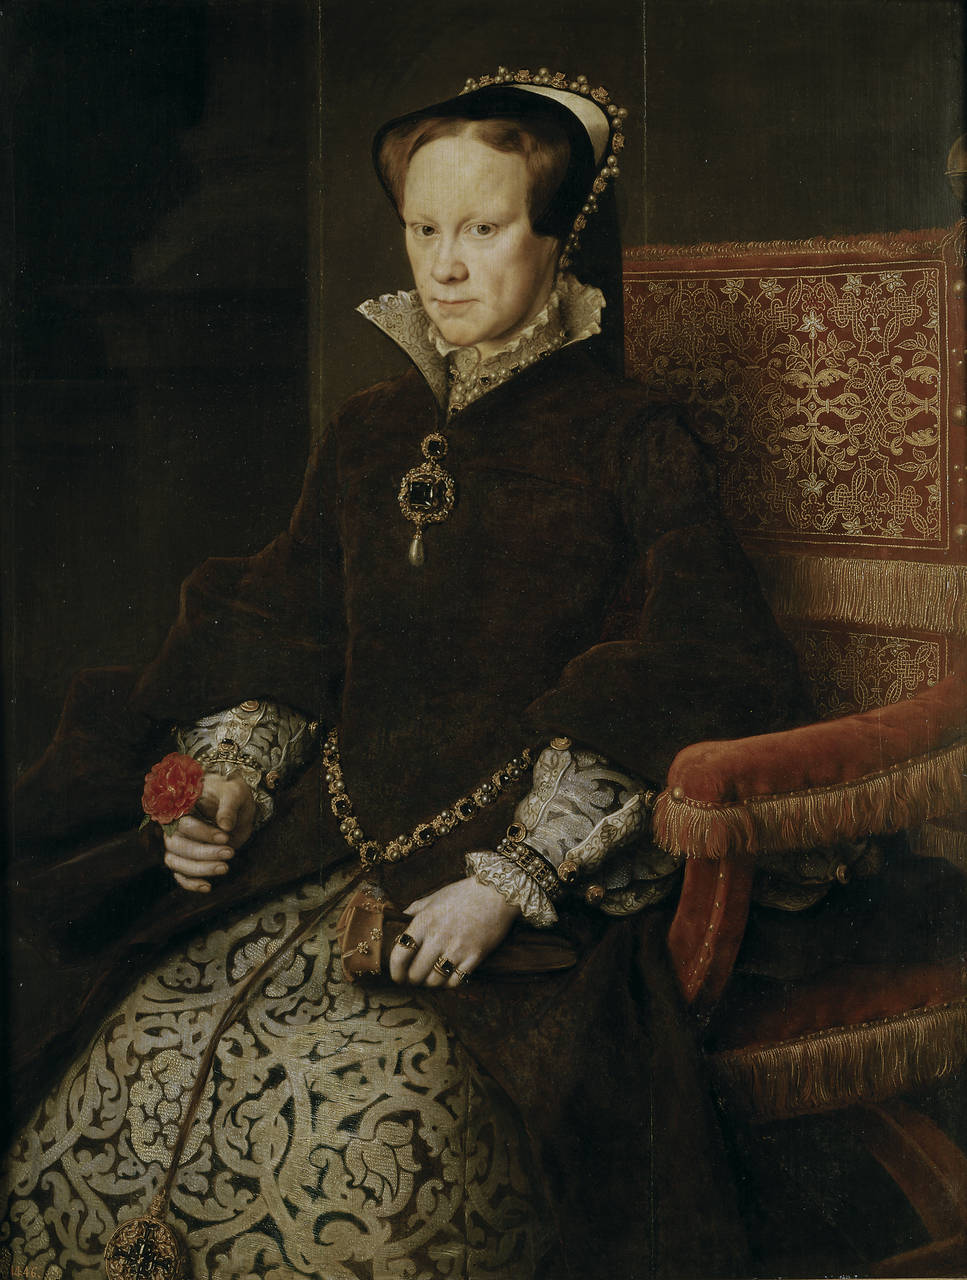 Retrato da Rainha Maria I da Inglaterra by Antonis Mor - 1554 